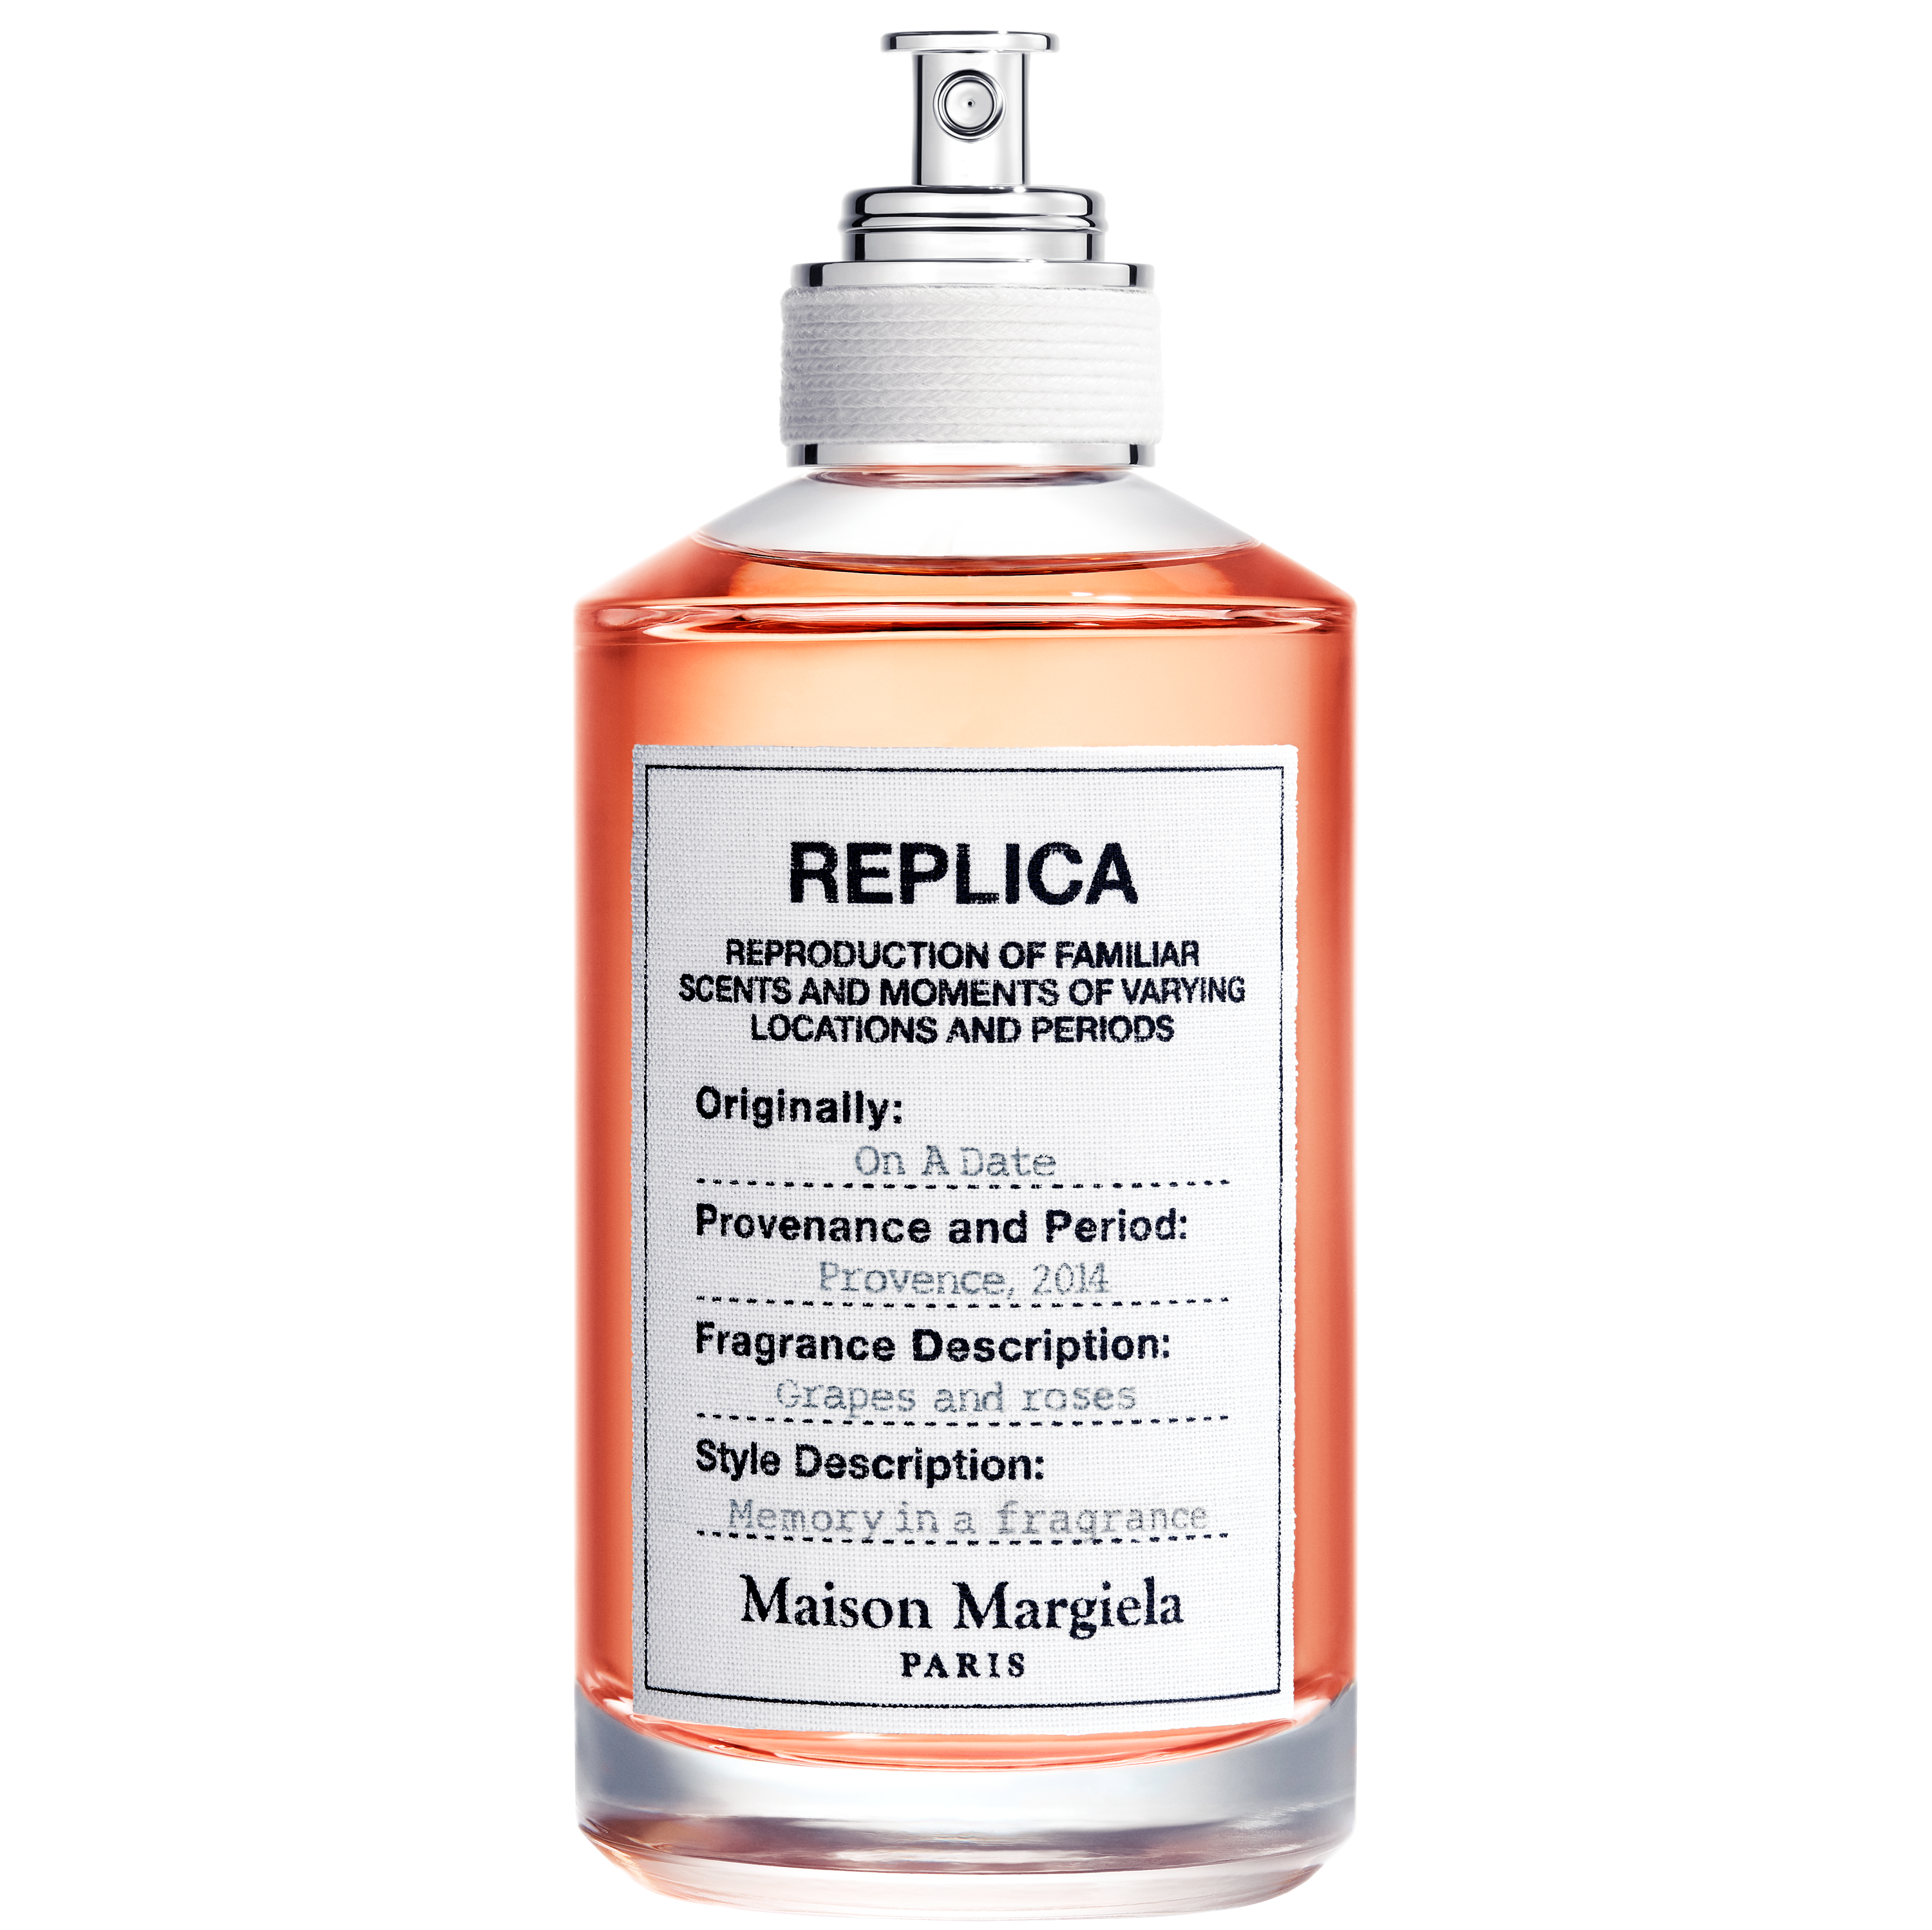 レプリカ オードトワレ フロム ザ ガーデン 100ml 大地と青々しいトマトリーフの香り|Maison Margiela'REPLICA 'Fragrances(メゾンマルジェラレプリカフレグランス)の通販｜アイルミネ